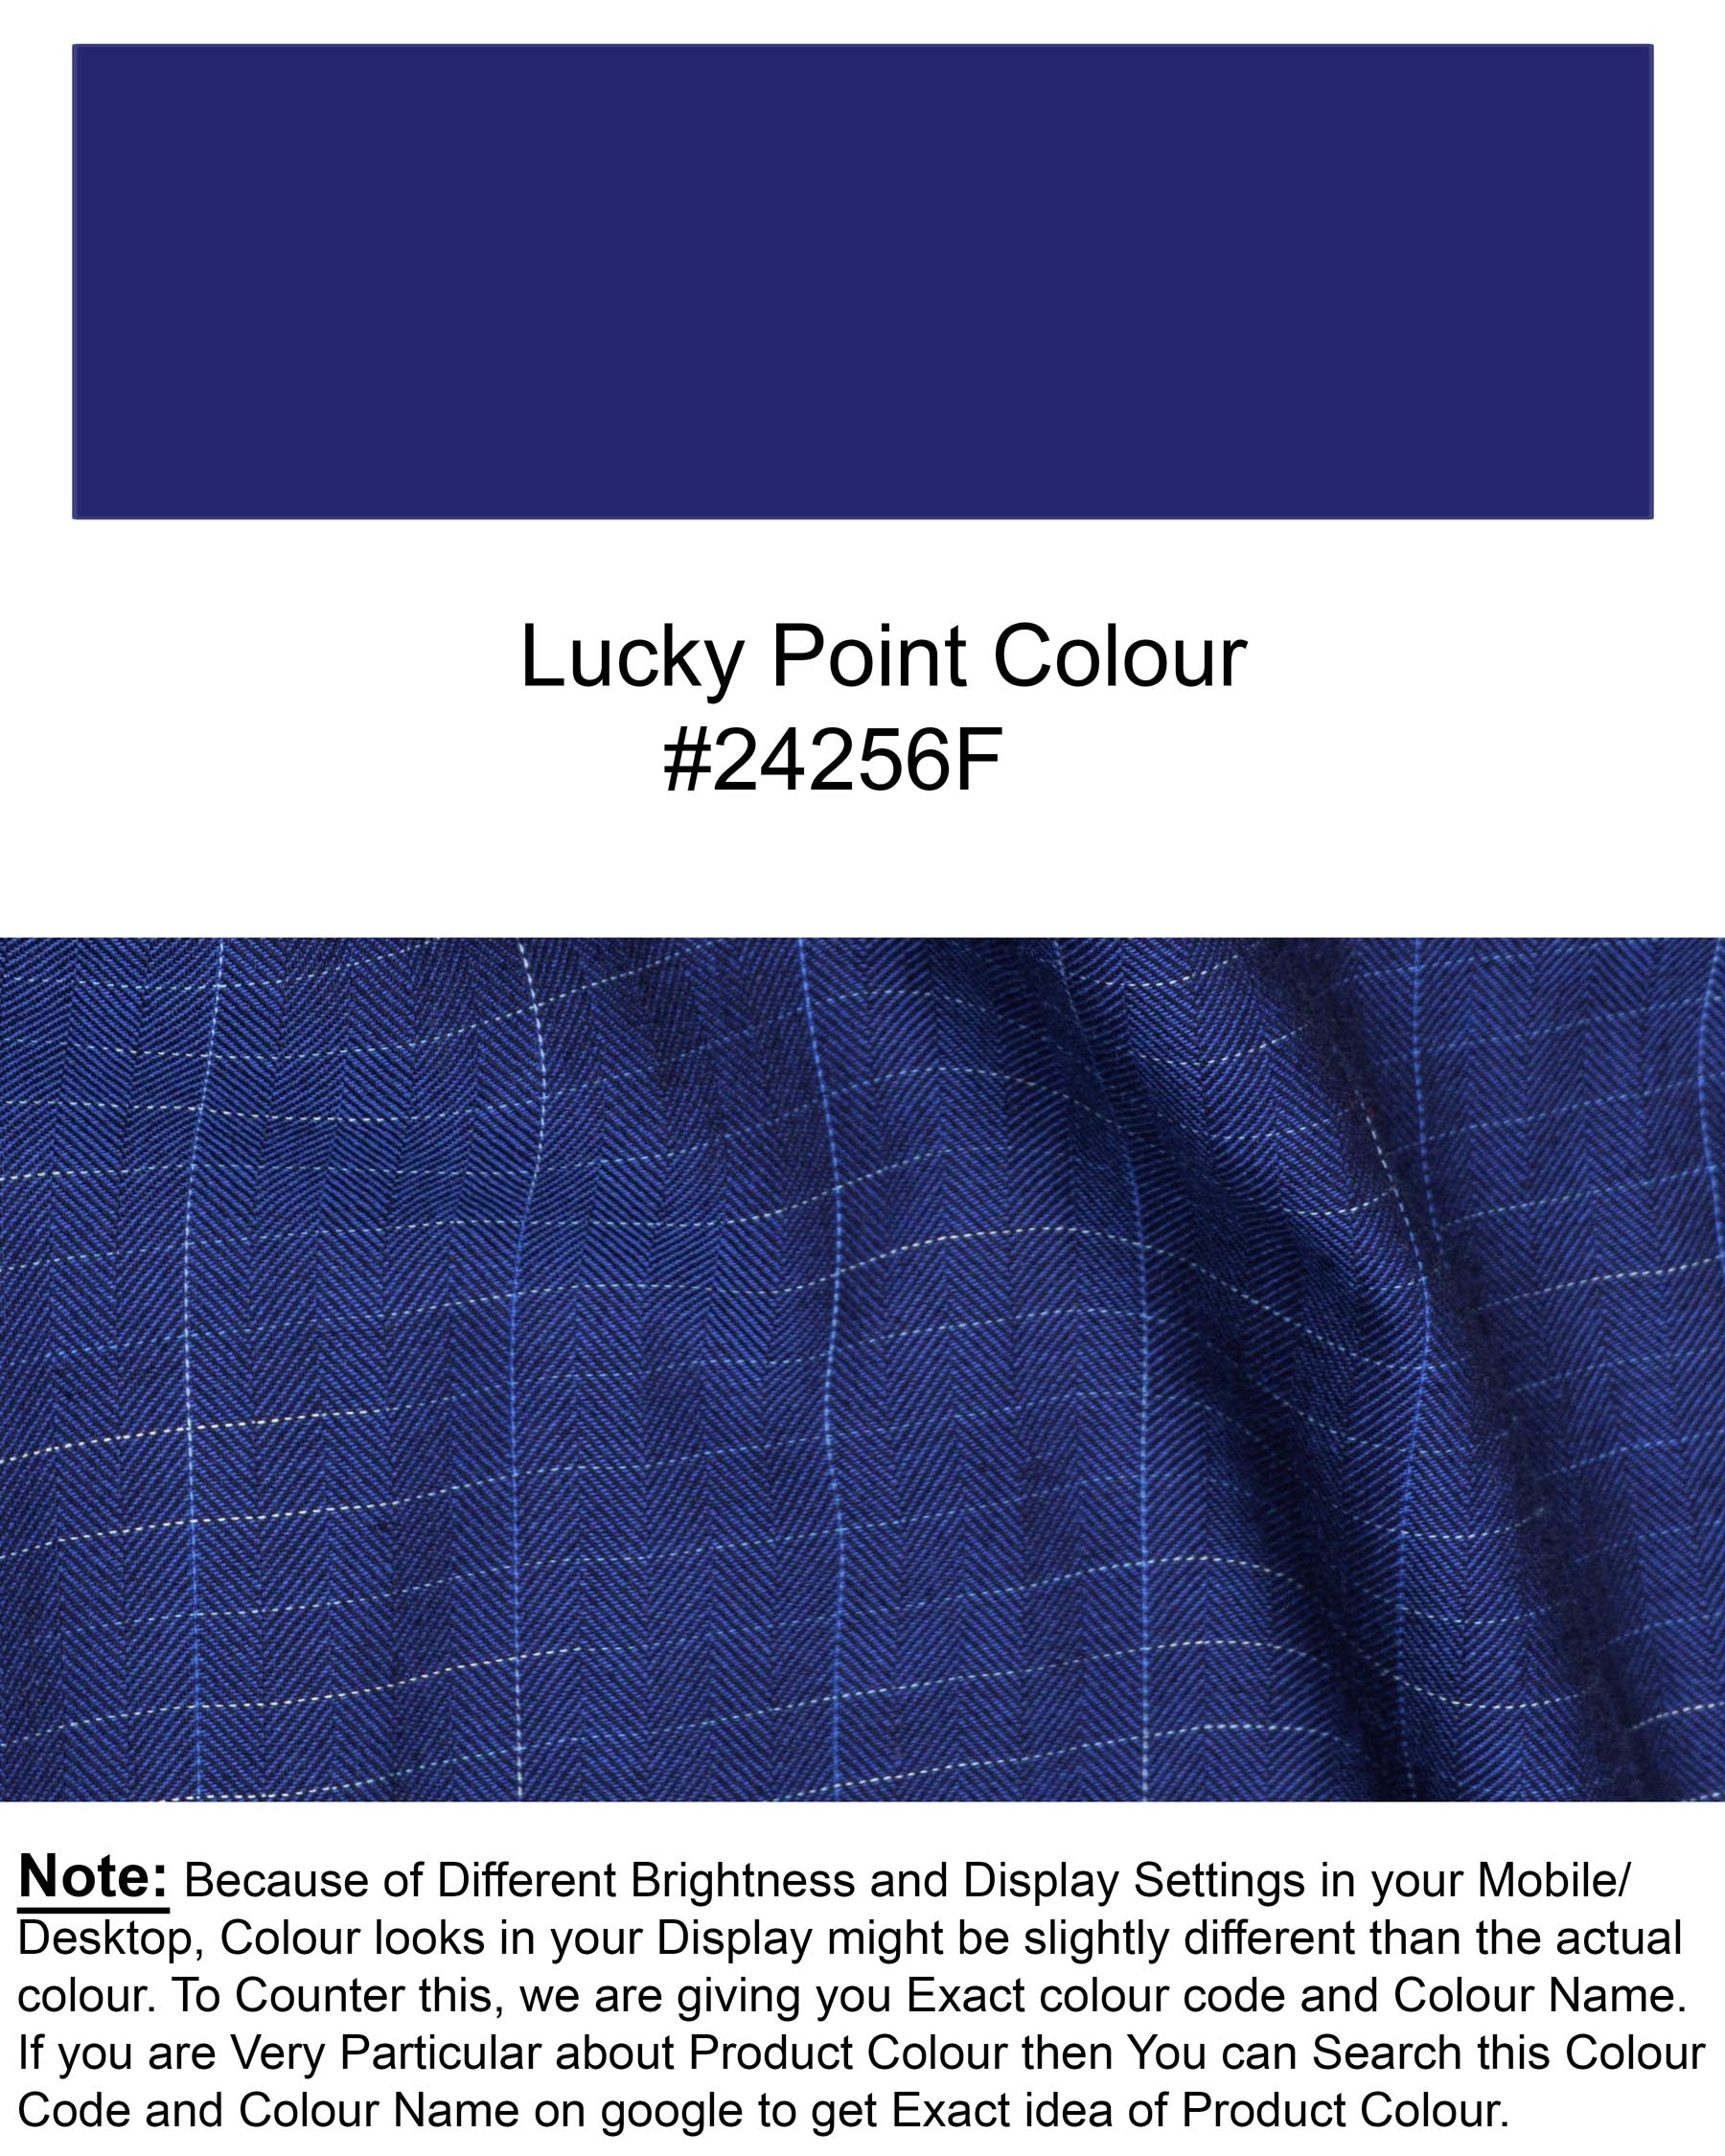 Lucky Point Blue Plaid Twill Textured Premium Cotton Shirt 6595-D20-38,6595-D20-H-38,6595-D20-39,6595-D20-H-39,6595-D20-40,6595-D20-H-40,6595-D20-42,6595-D20-H-42,6595-D20-44,6595-D20-H-44,6595-D20-46,6595-D20-H-46,6595-D20-48,6595-D20-H-48,6595-D20-50,6595-D20-H-50,6595-D20-52,6595-D20-H-52